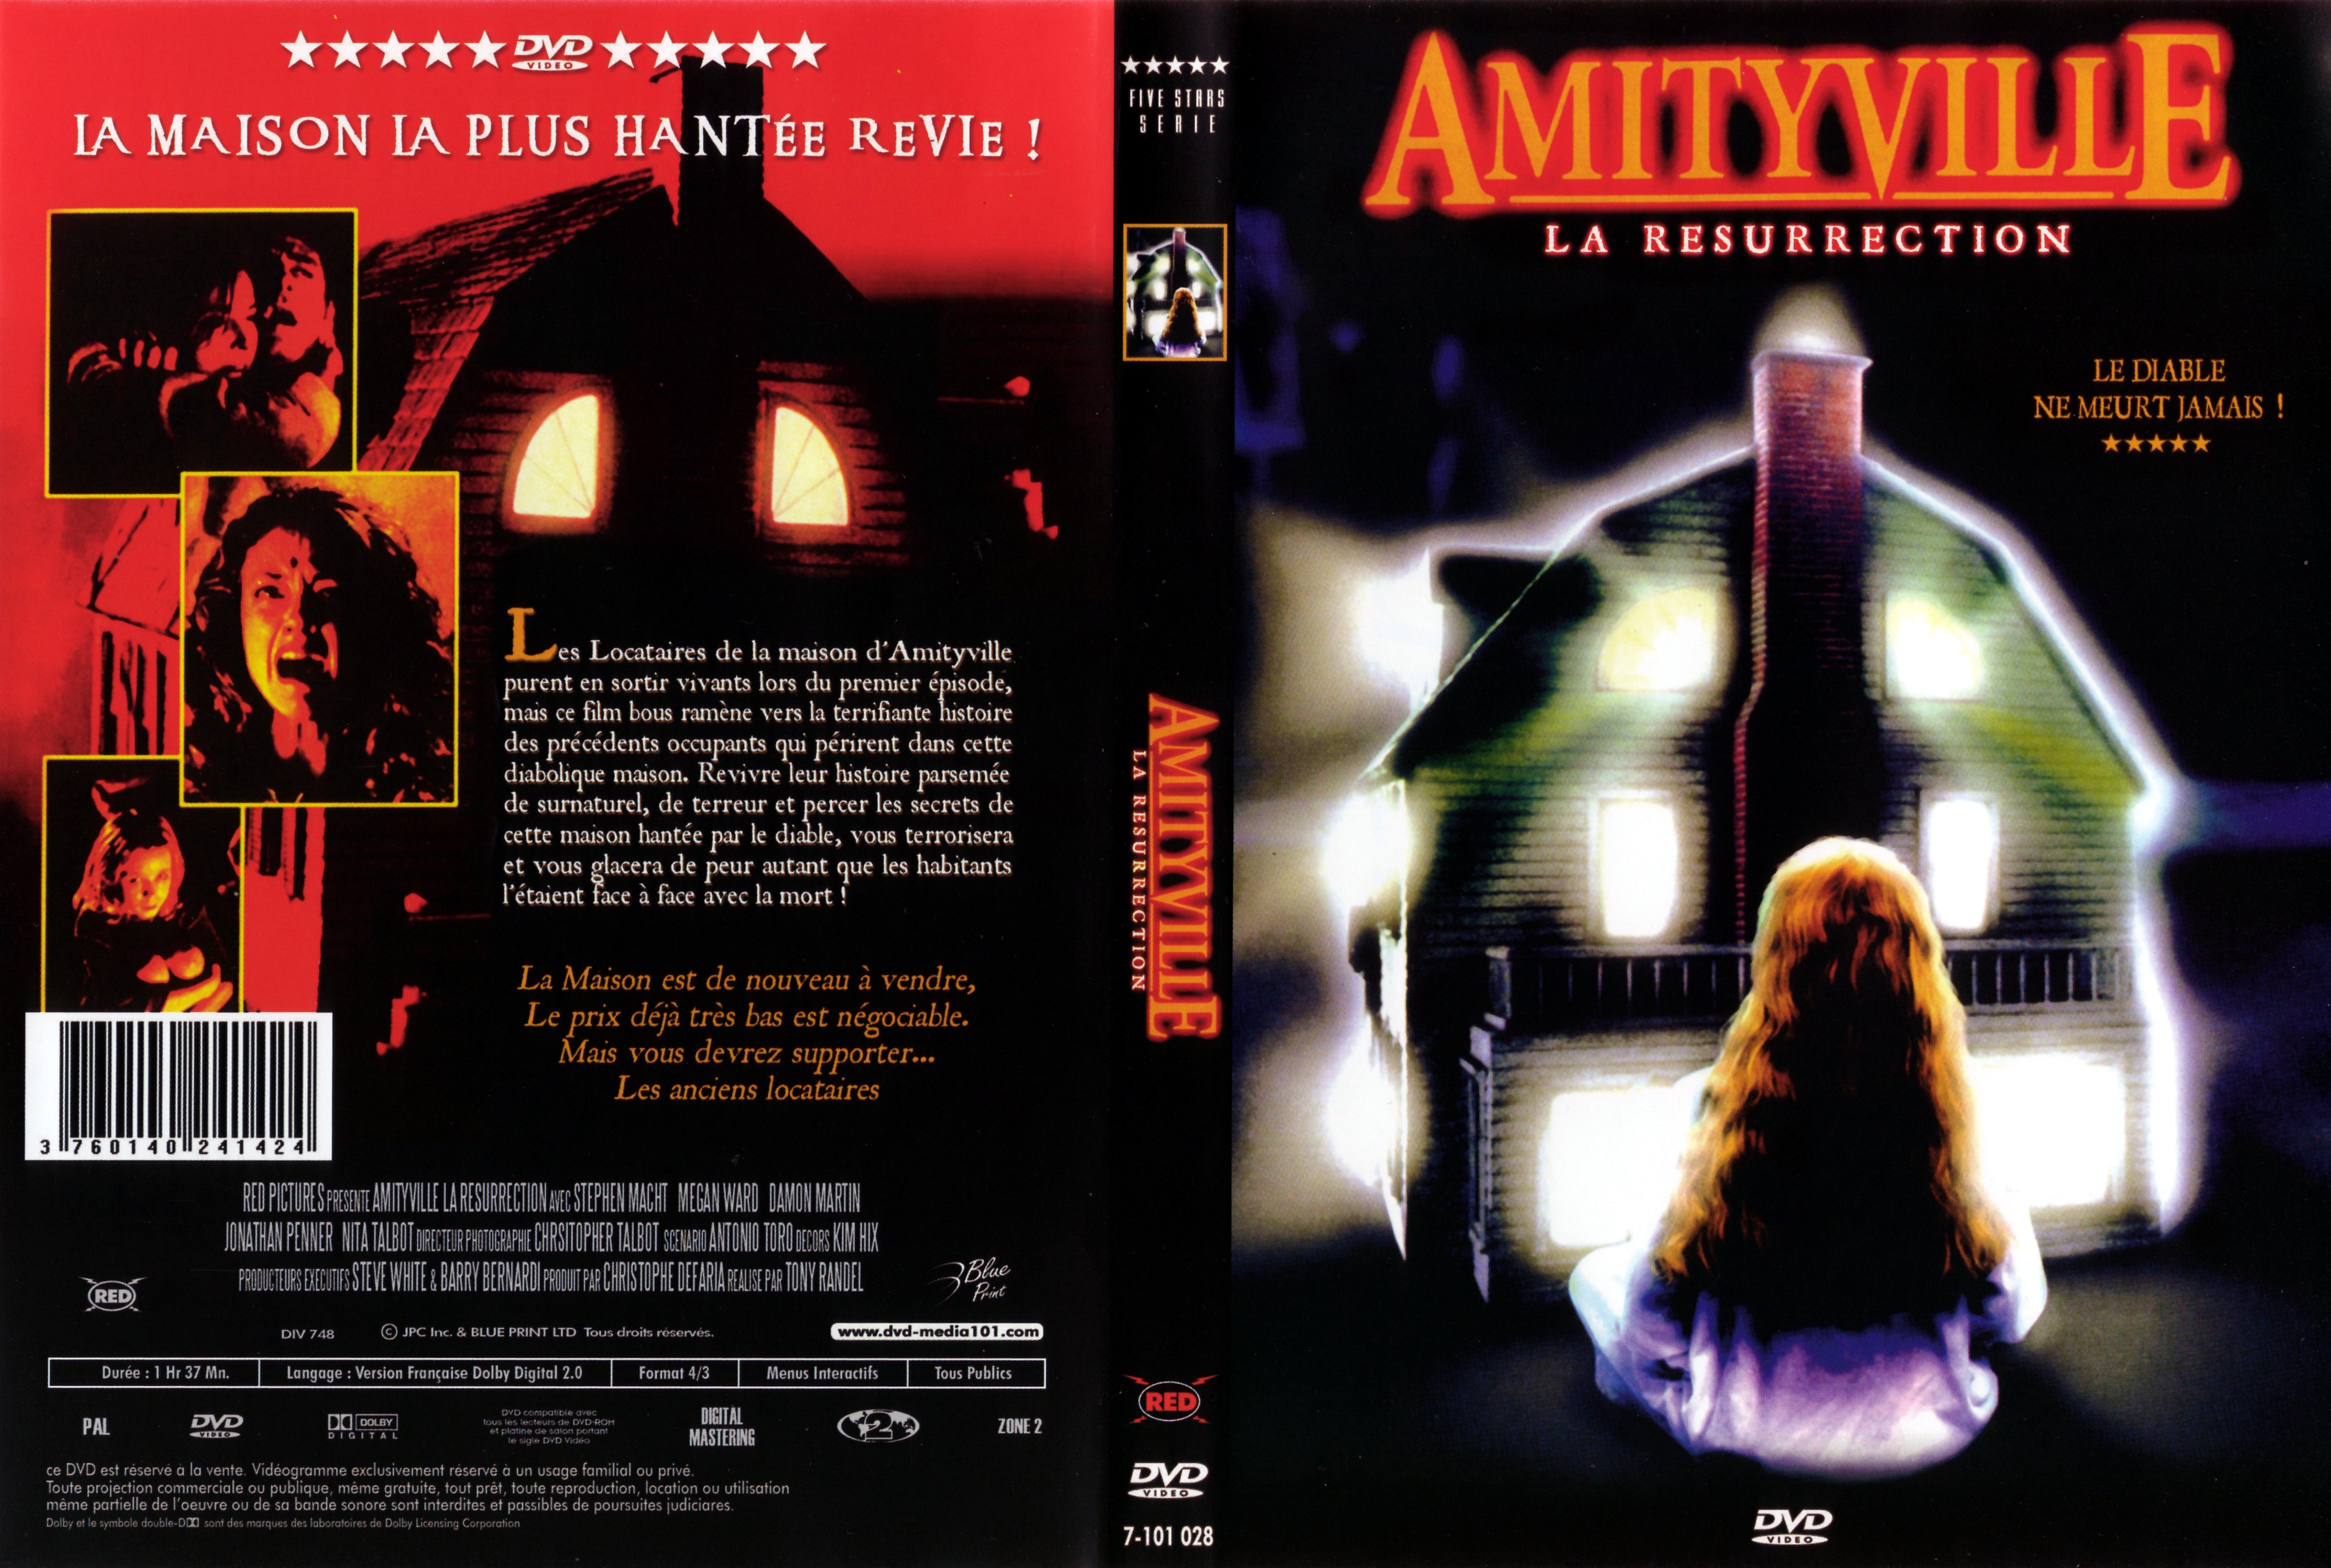 Jaquette DVD Amityville - La ressurection